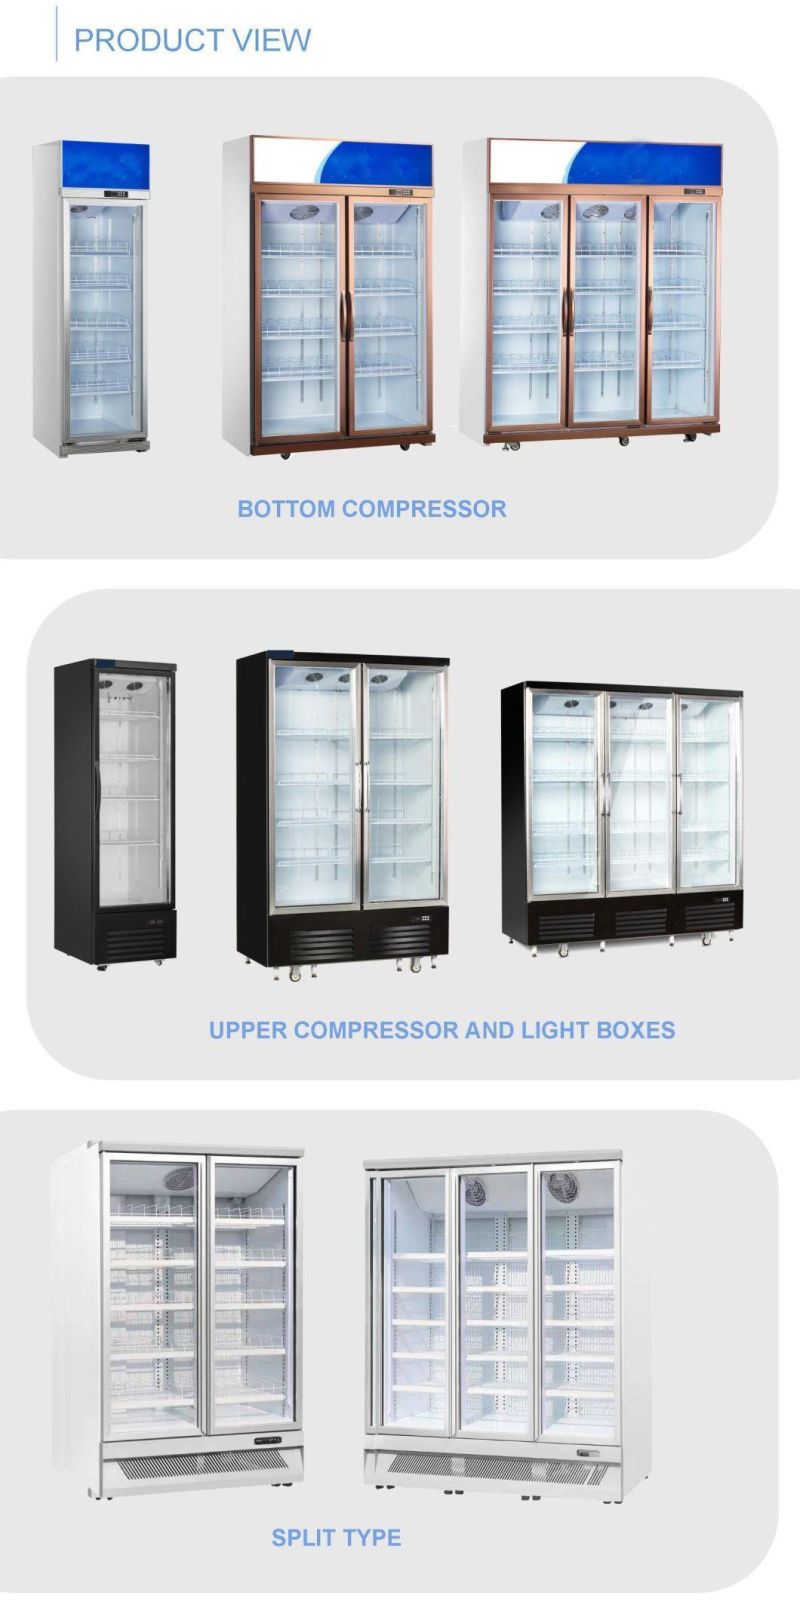 Commercial Supermarket Vertical Beverage Fresh-Keeping Refrigerator Freezer Display Cabinet